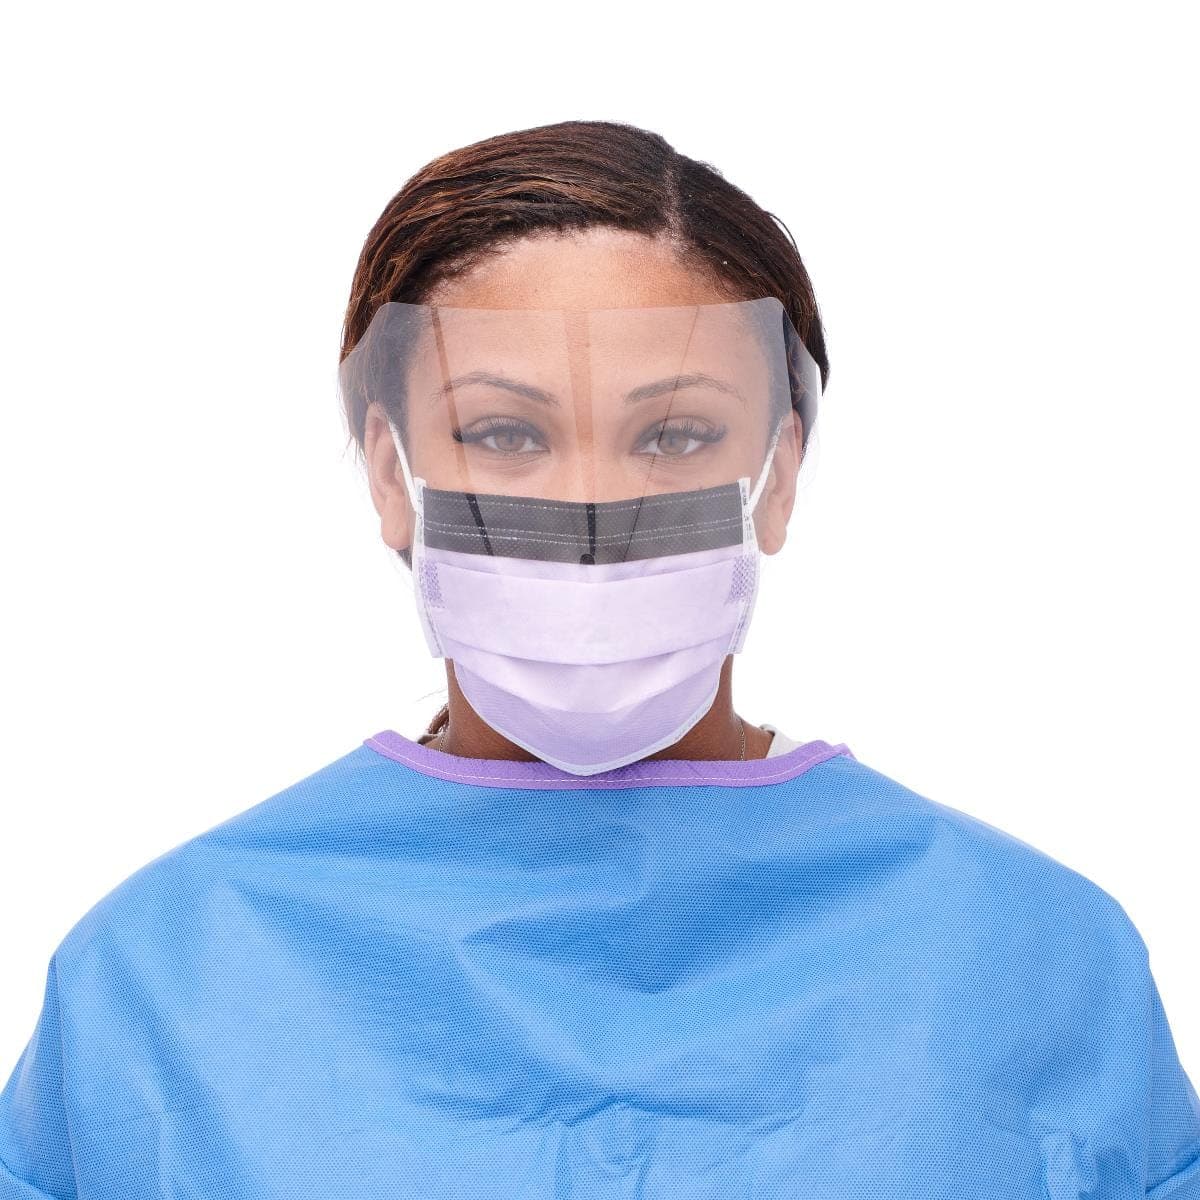 Medline Medline ASTM Level 3 Procedure Face Masks with Eye Shield and Ear Loops NON27410ELZ